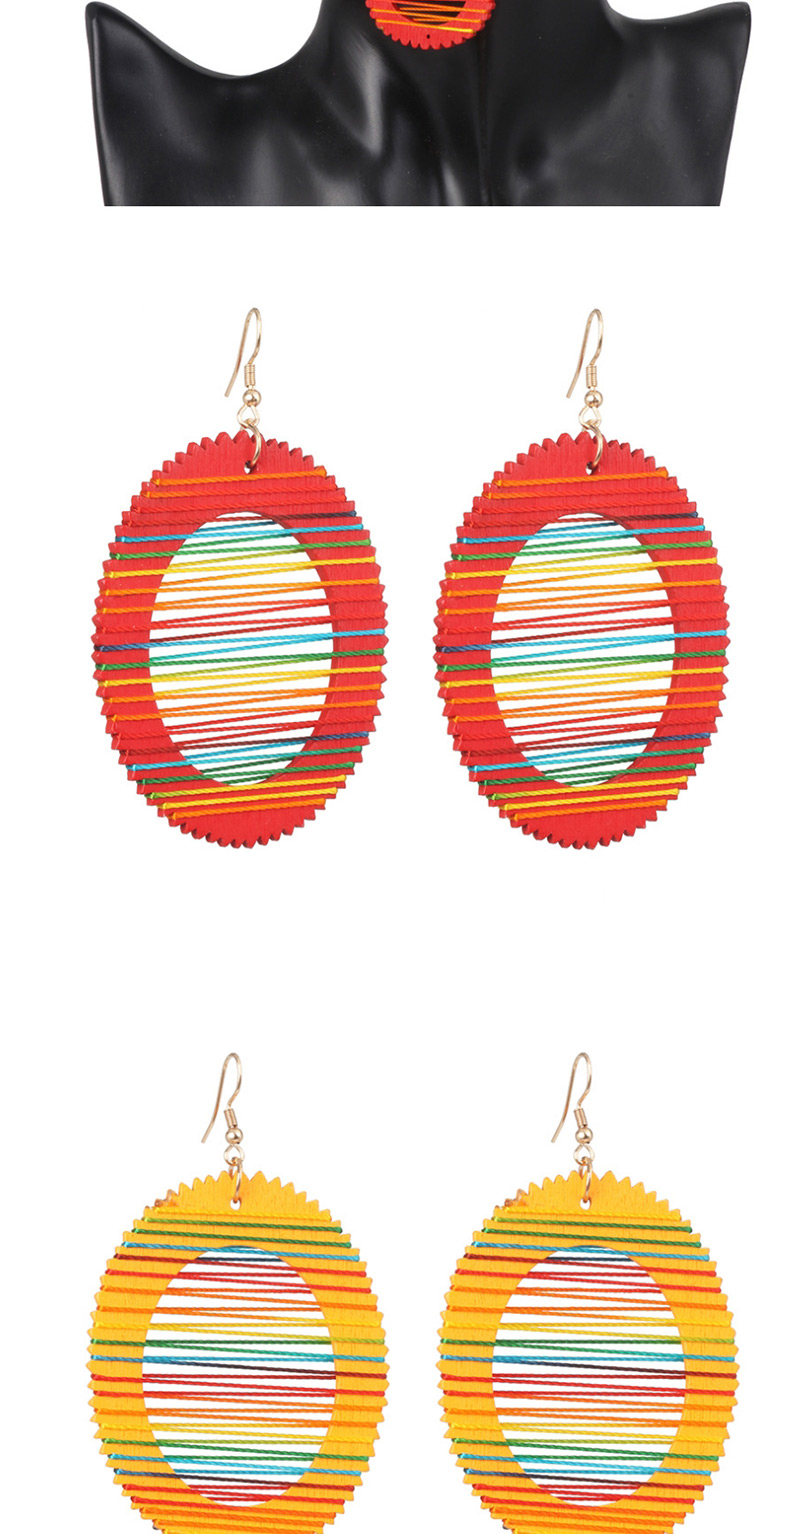 Fashion Water Droplet Red Geometric Wooden Winding Rainbow Line Earrings,Drop Earrings